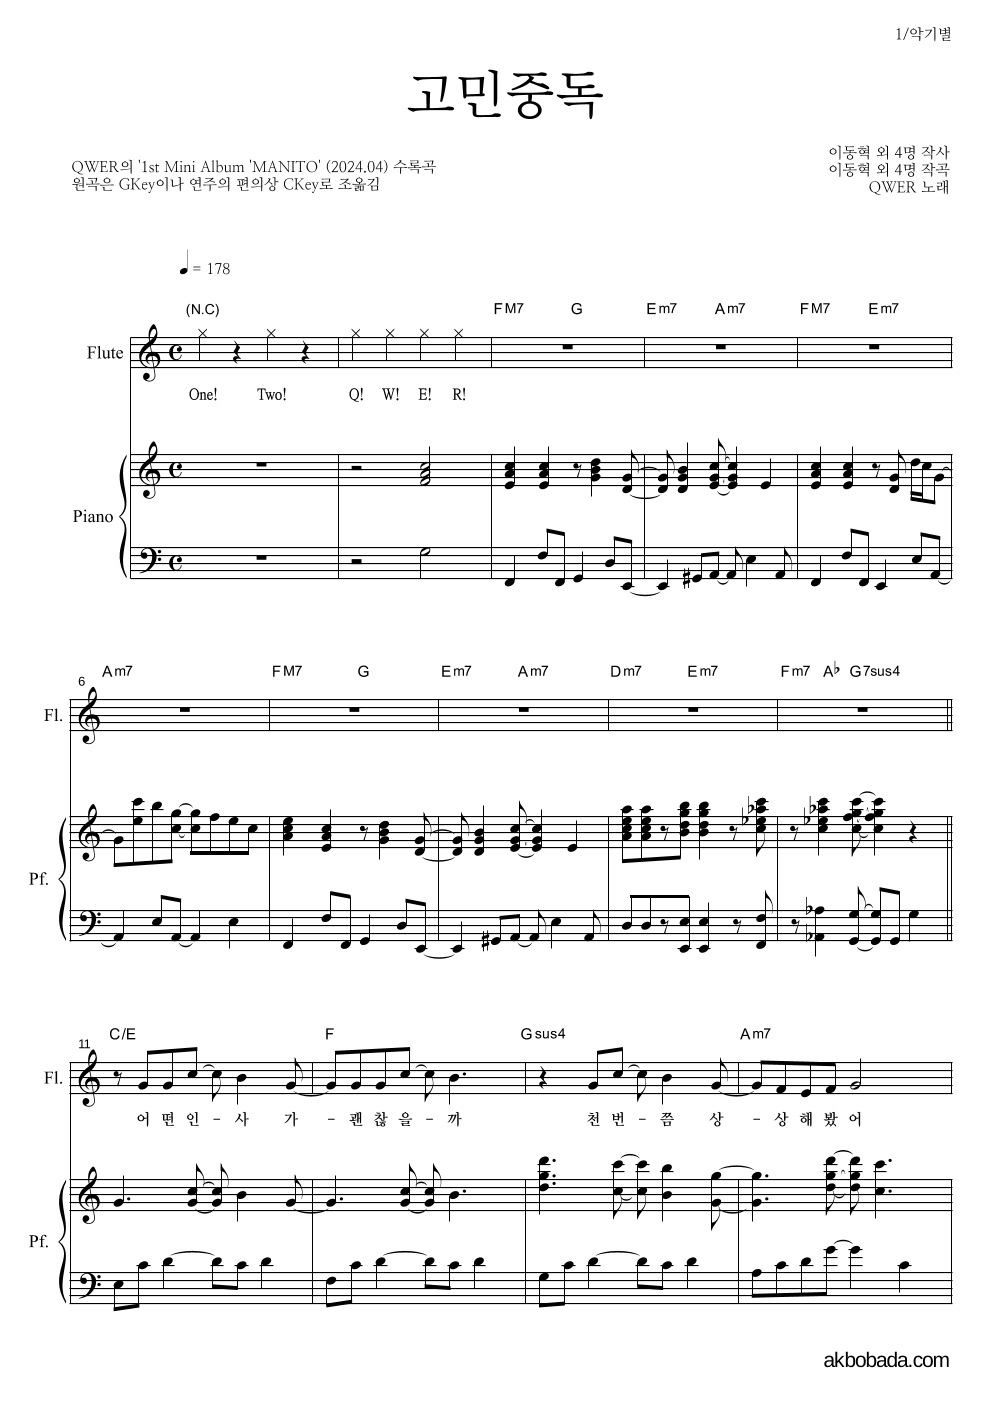 QWER - 고민중독 플룻&피아노 악보 